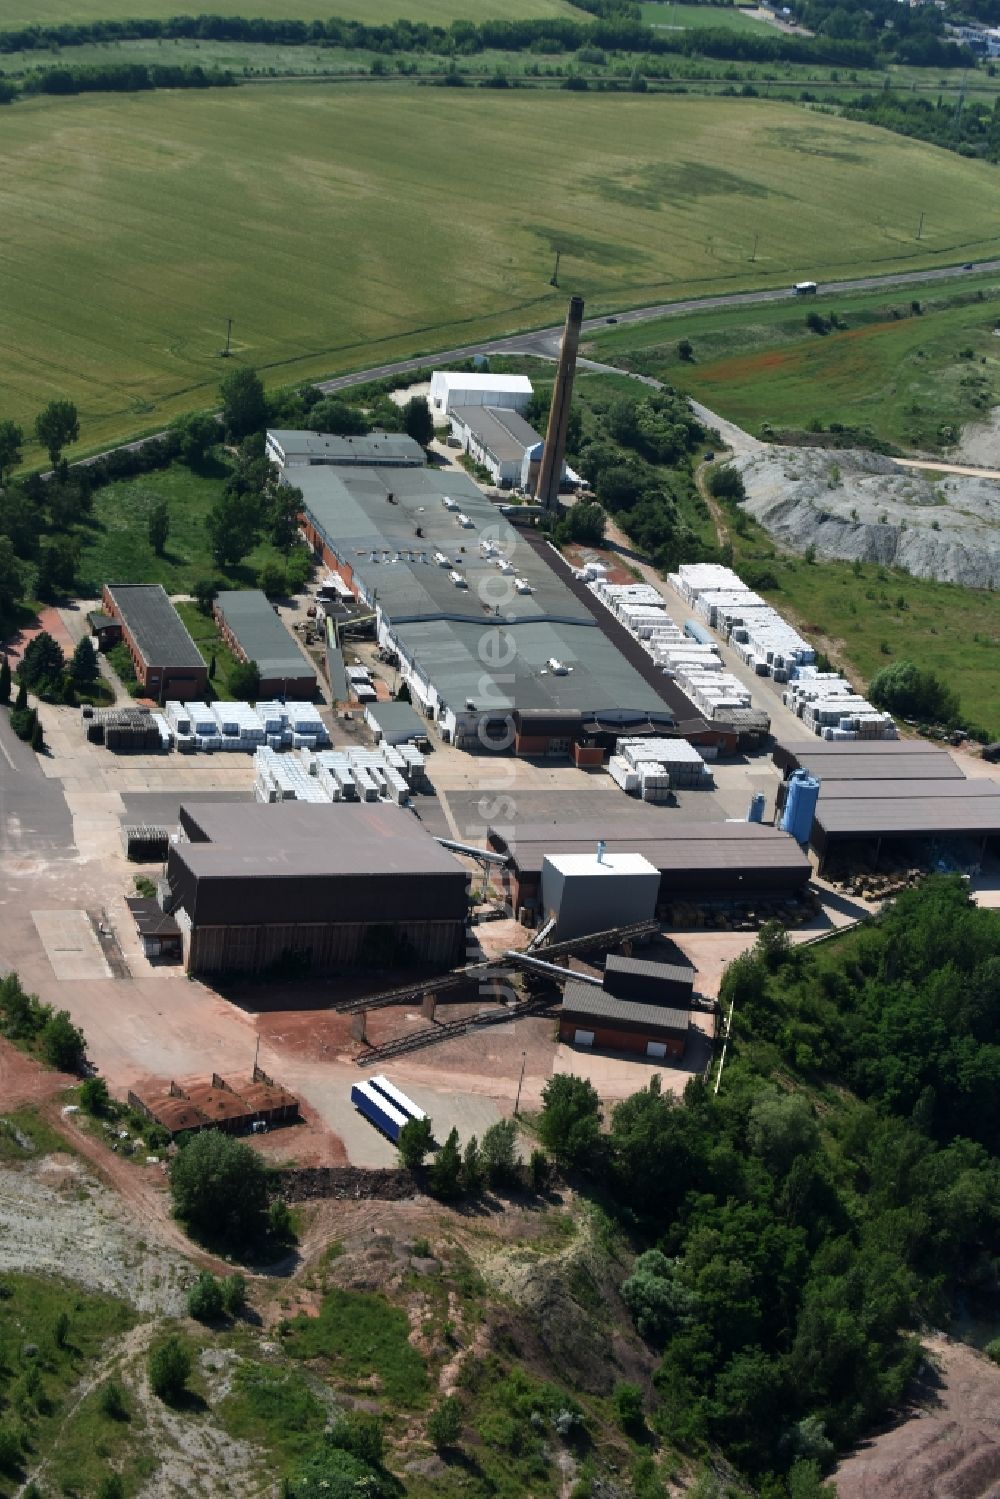 Baalberge von oben - Firmengelände der Wienerberger Ziegelindustrie GmbH in Baalberge im Bundesland Sachsen-Anhalt